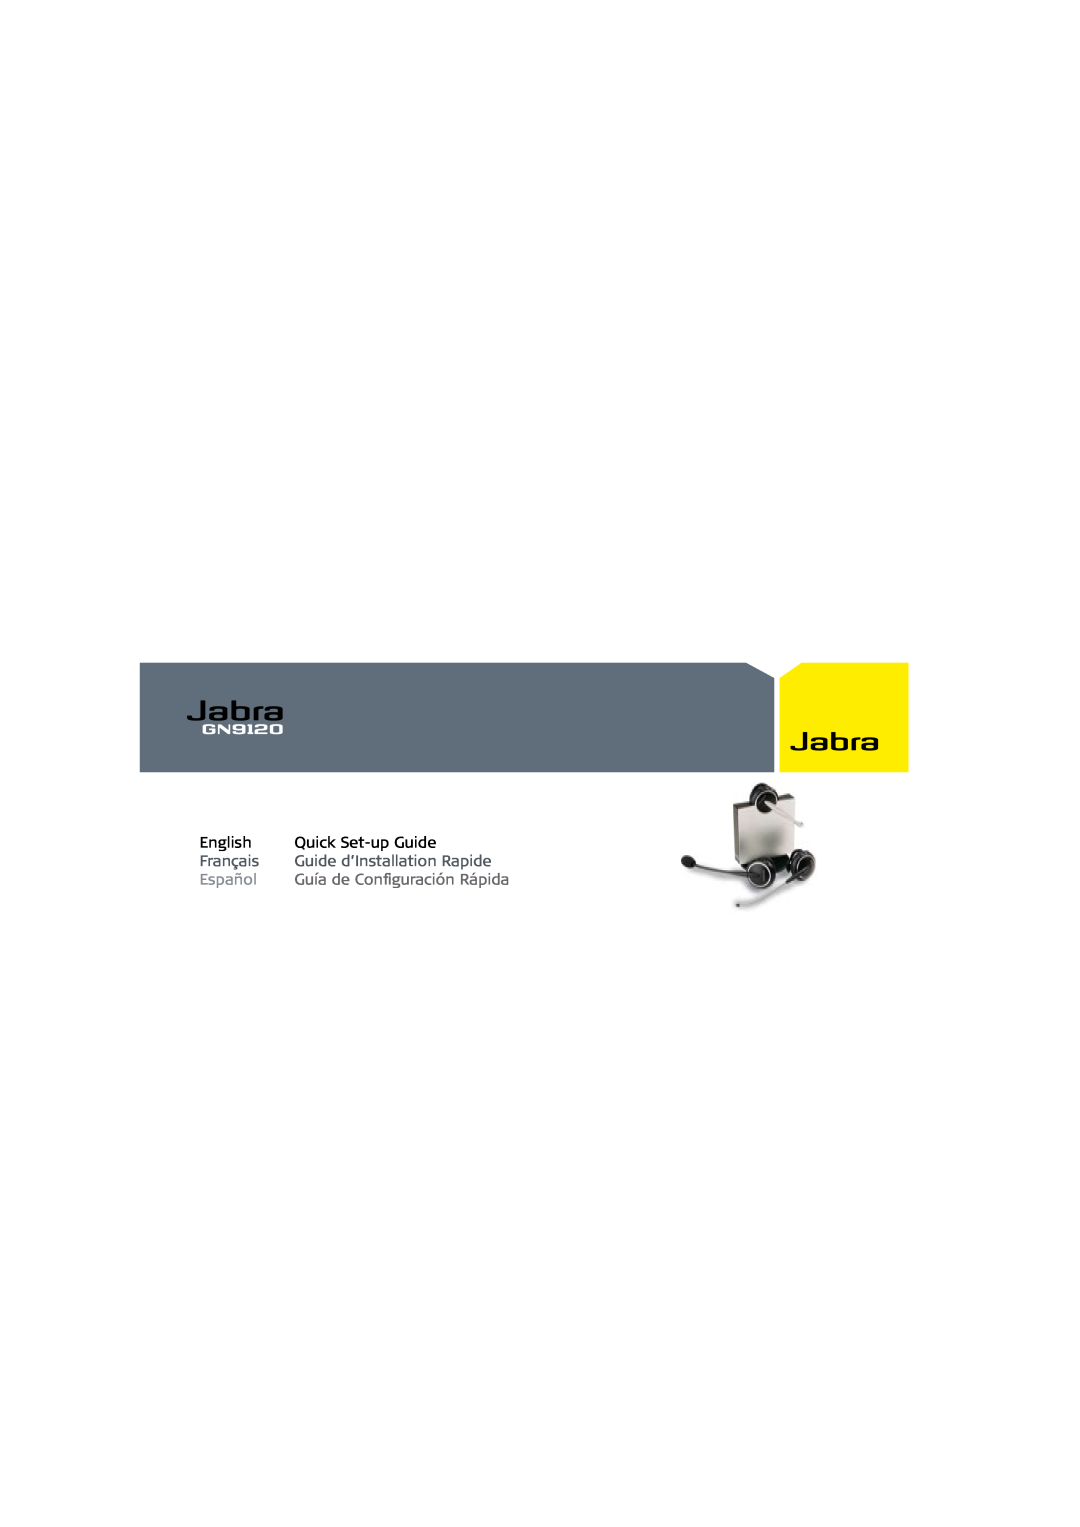 Jabra GN9120 setup guide English, Quick Set-upGuide, Français, Guide d’Installation Rapide, Español 